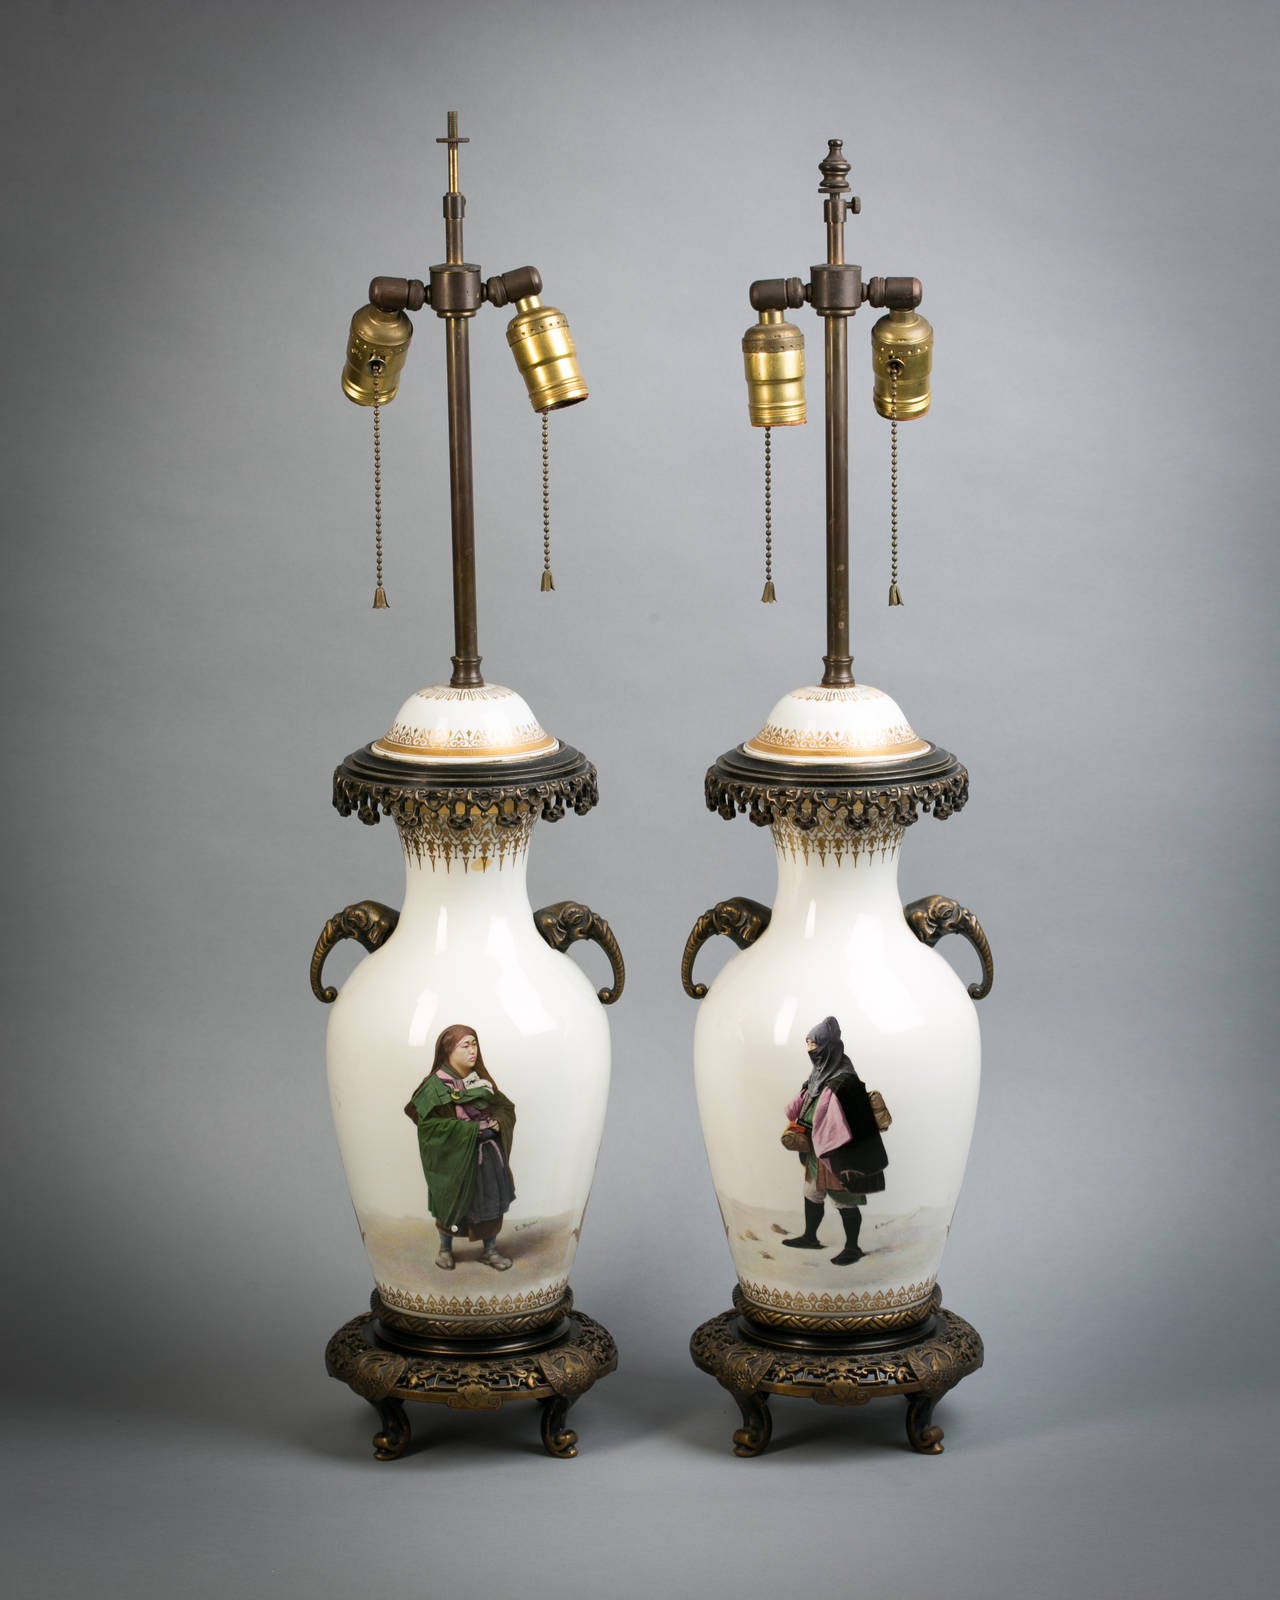 Zwei in Bronze gefasste französische Porzellanvasen, die als Lampen montiert sind, um 1885.

Gezeichnet Eugene Sieffert. 

Die Elefantengriffe sind aus Bronze.